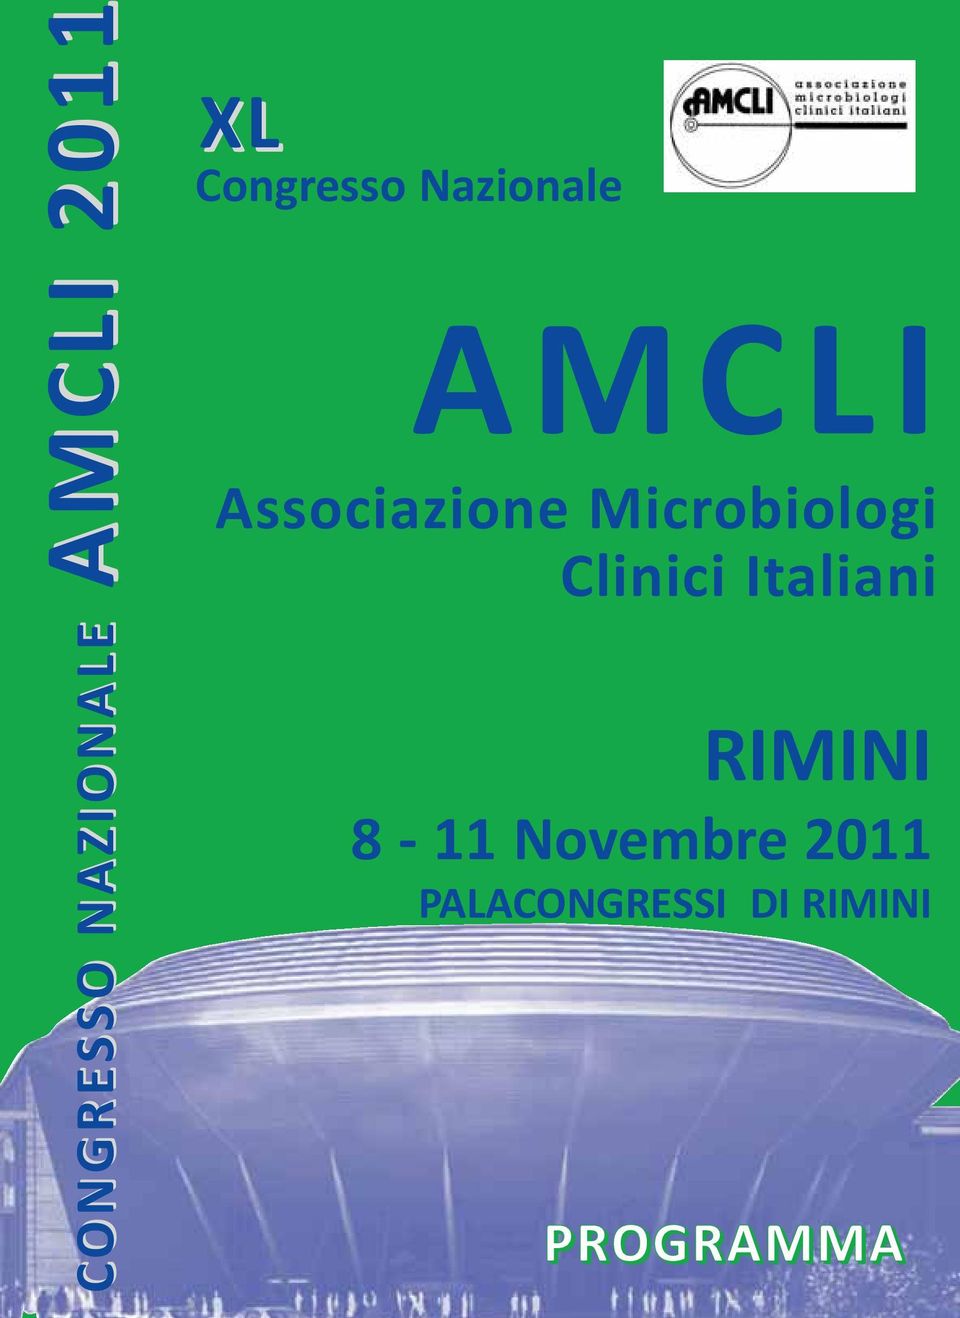 Microbiologi Clinici Italiani RIMINI 8